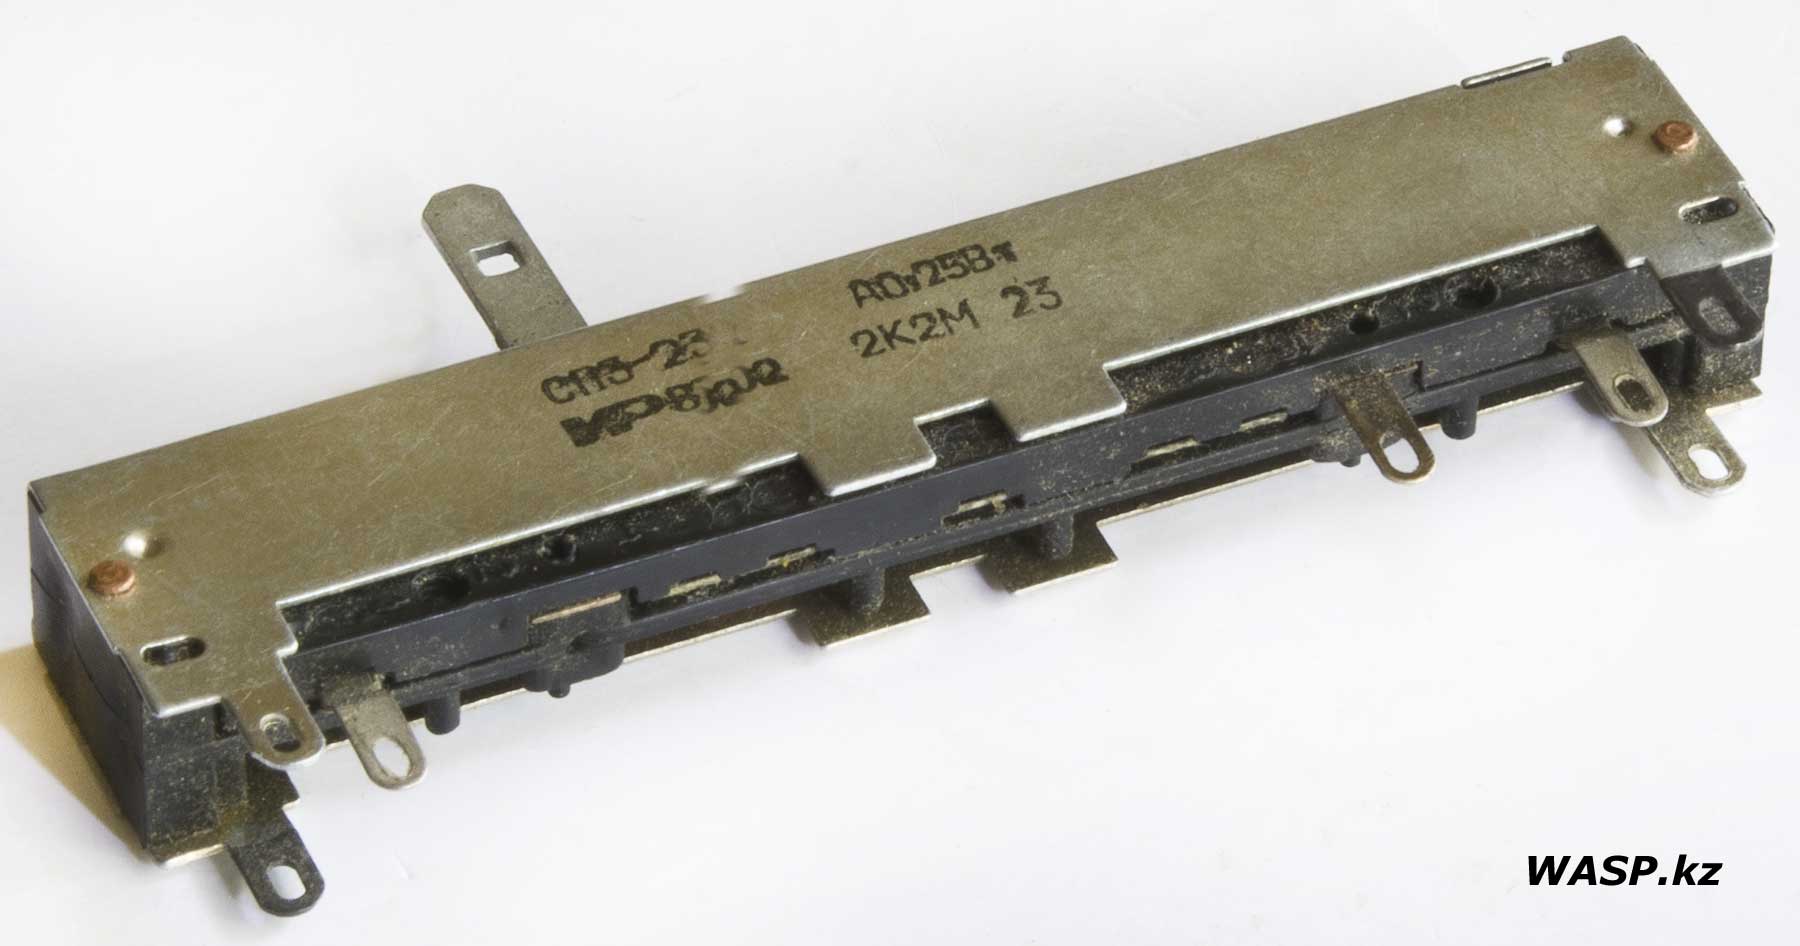 переменный резистор СП3-23а А0,25 Вт, 2К2М СССР, описание